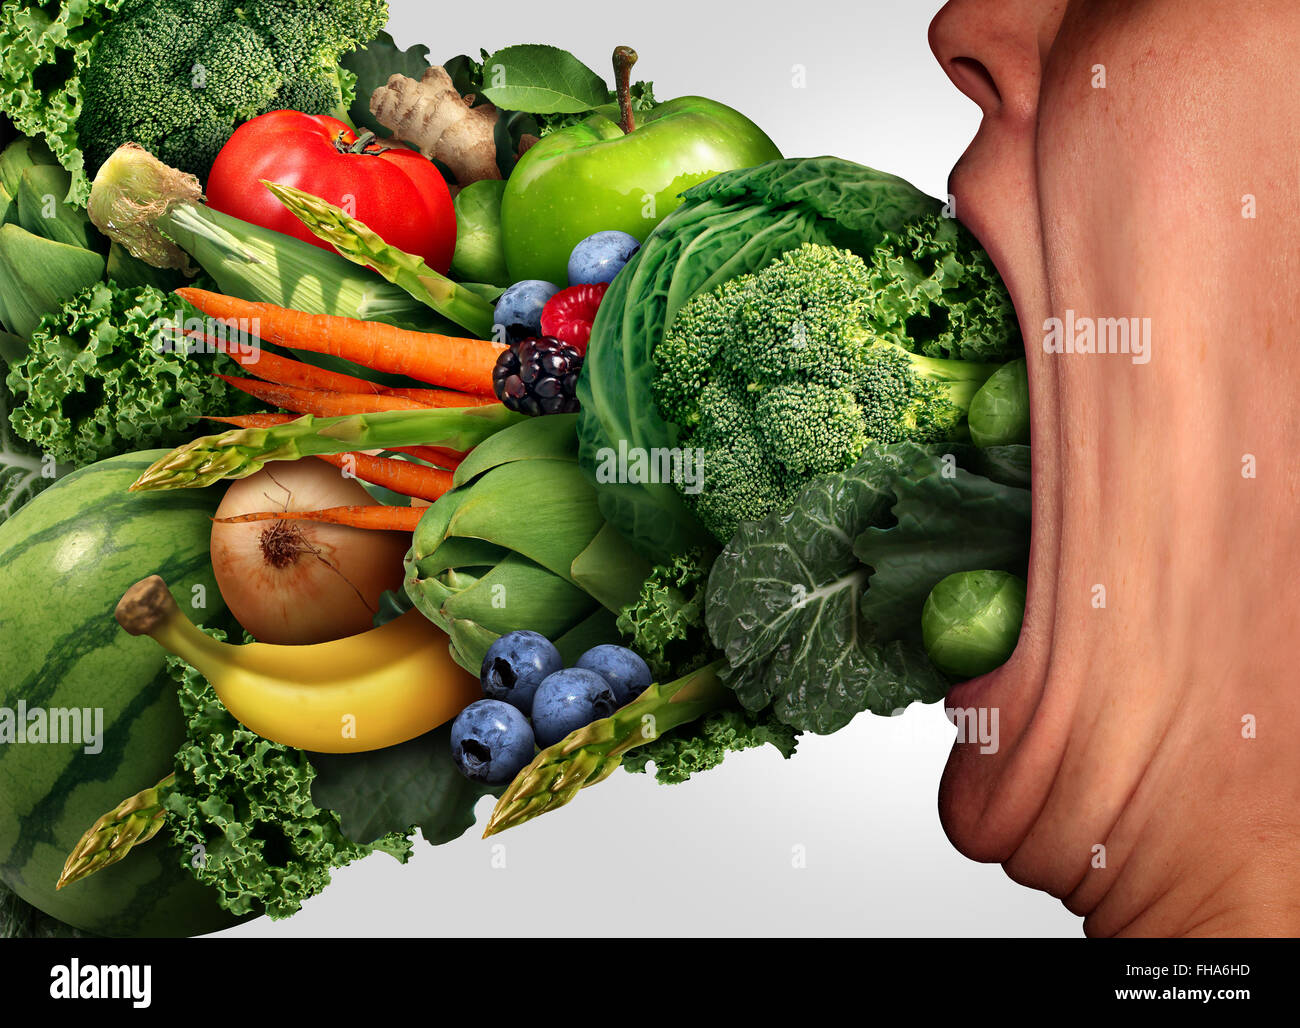 Manger une alimentation saine, une personne avec une grande bouche étirée ouverte manger des fruits et légumes en tant que symbole de vie et de remise en forme. Banque D'Images